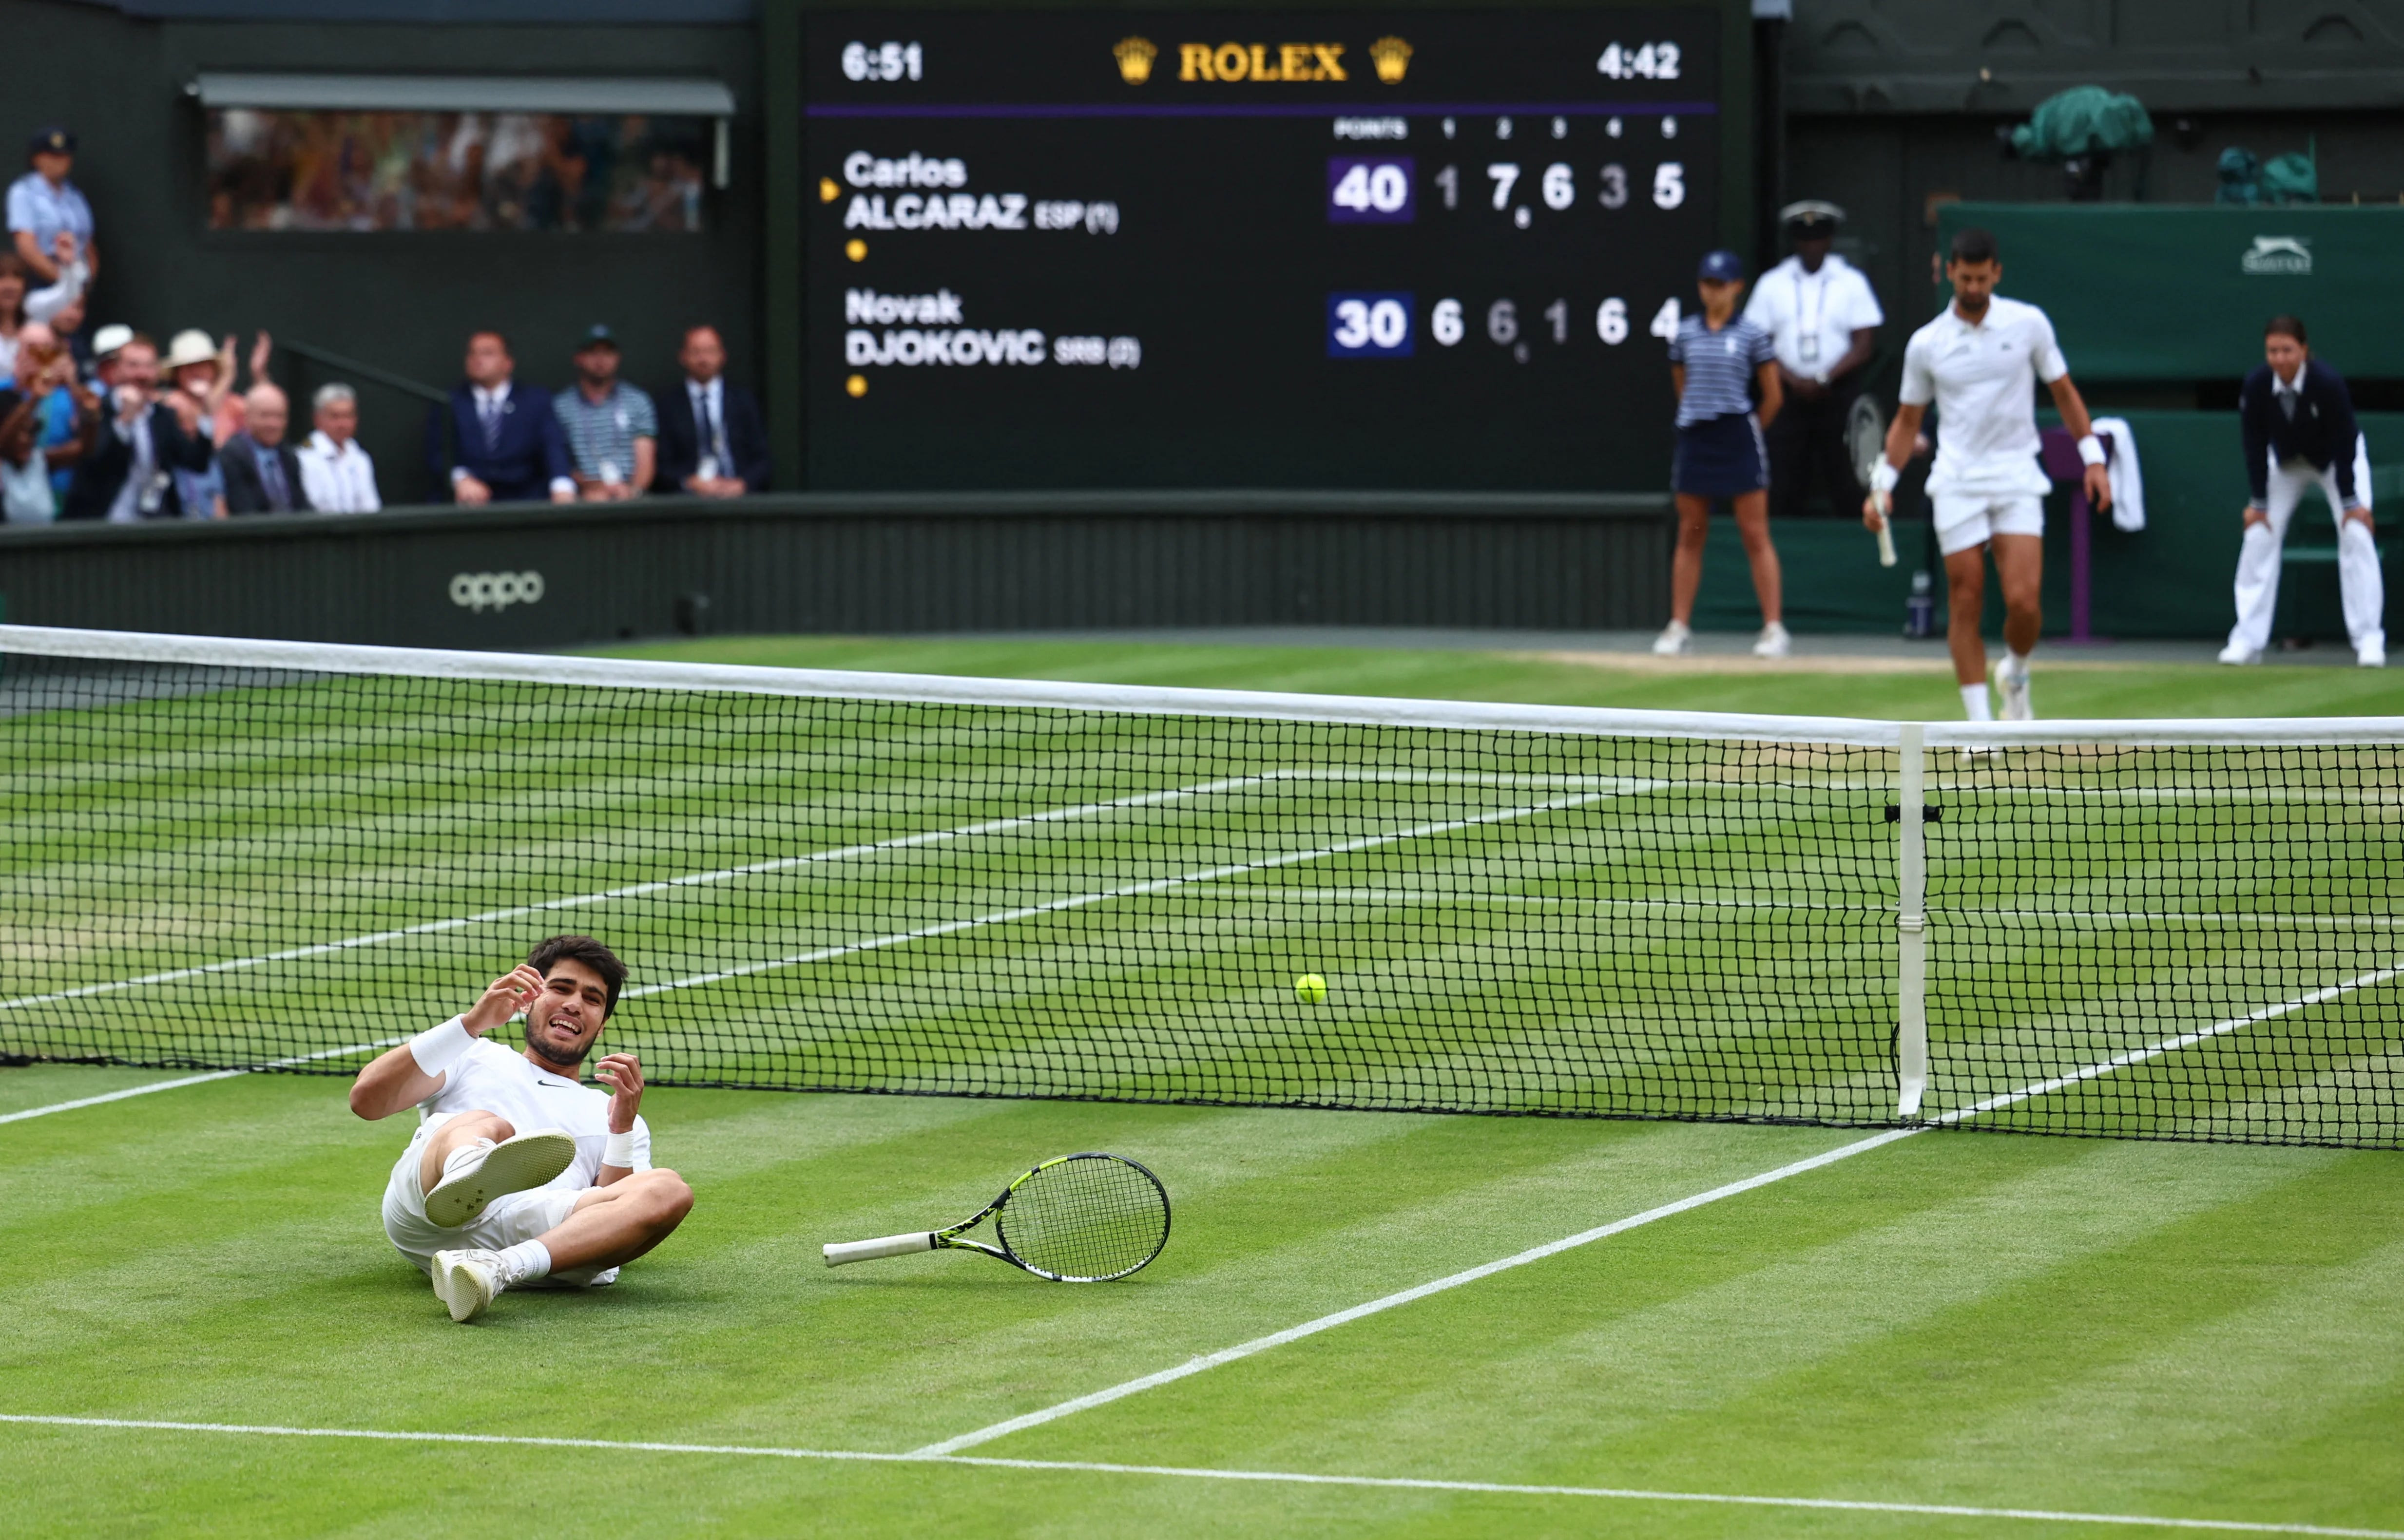 El momento en el que Carlos Alcaraz derrotó a Novak Djokovic en la final de Wimbledon (REUTERS/Toby Melville)